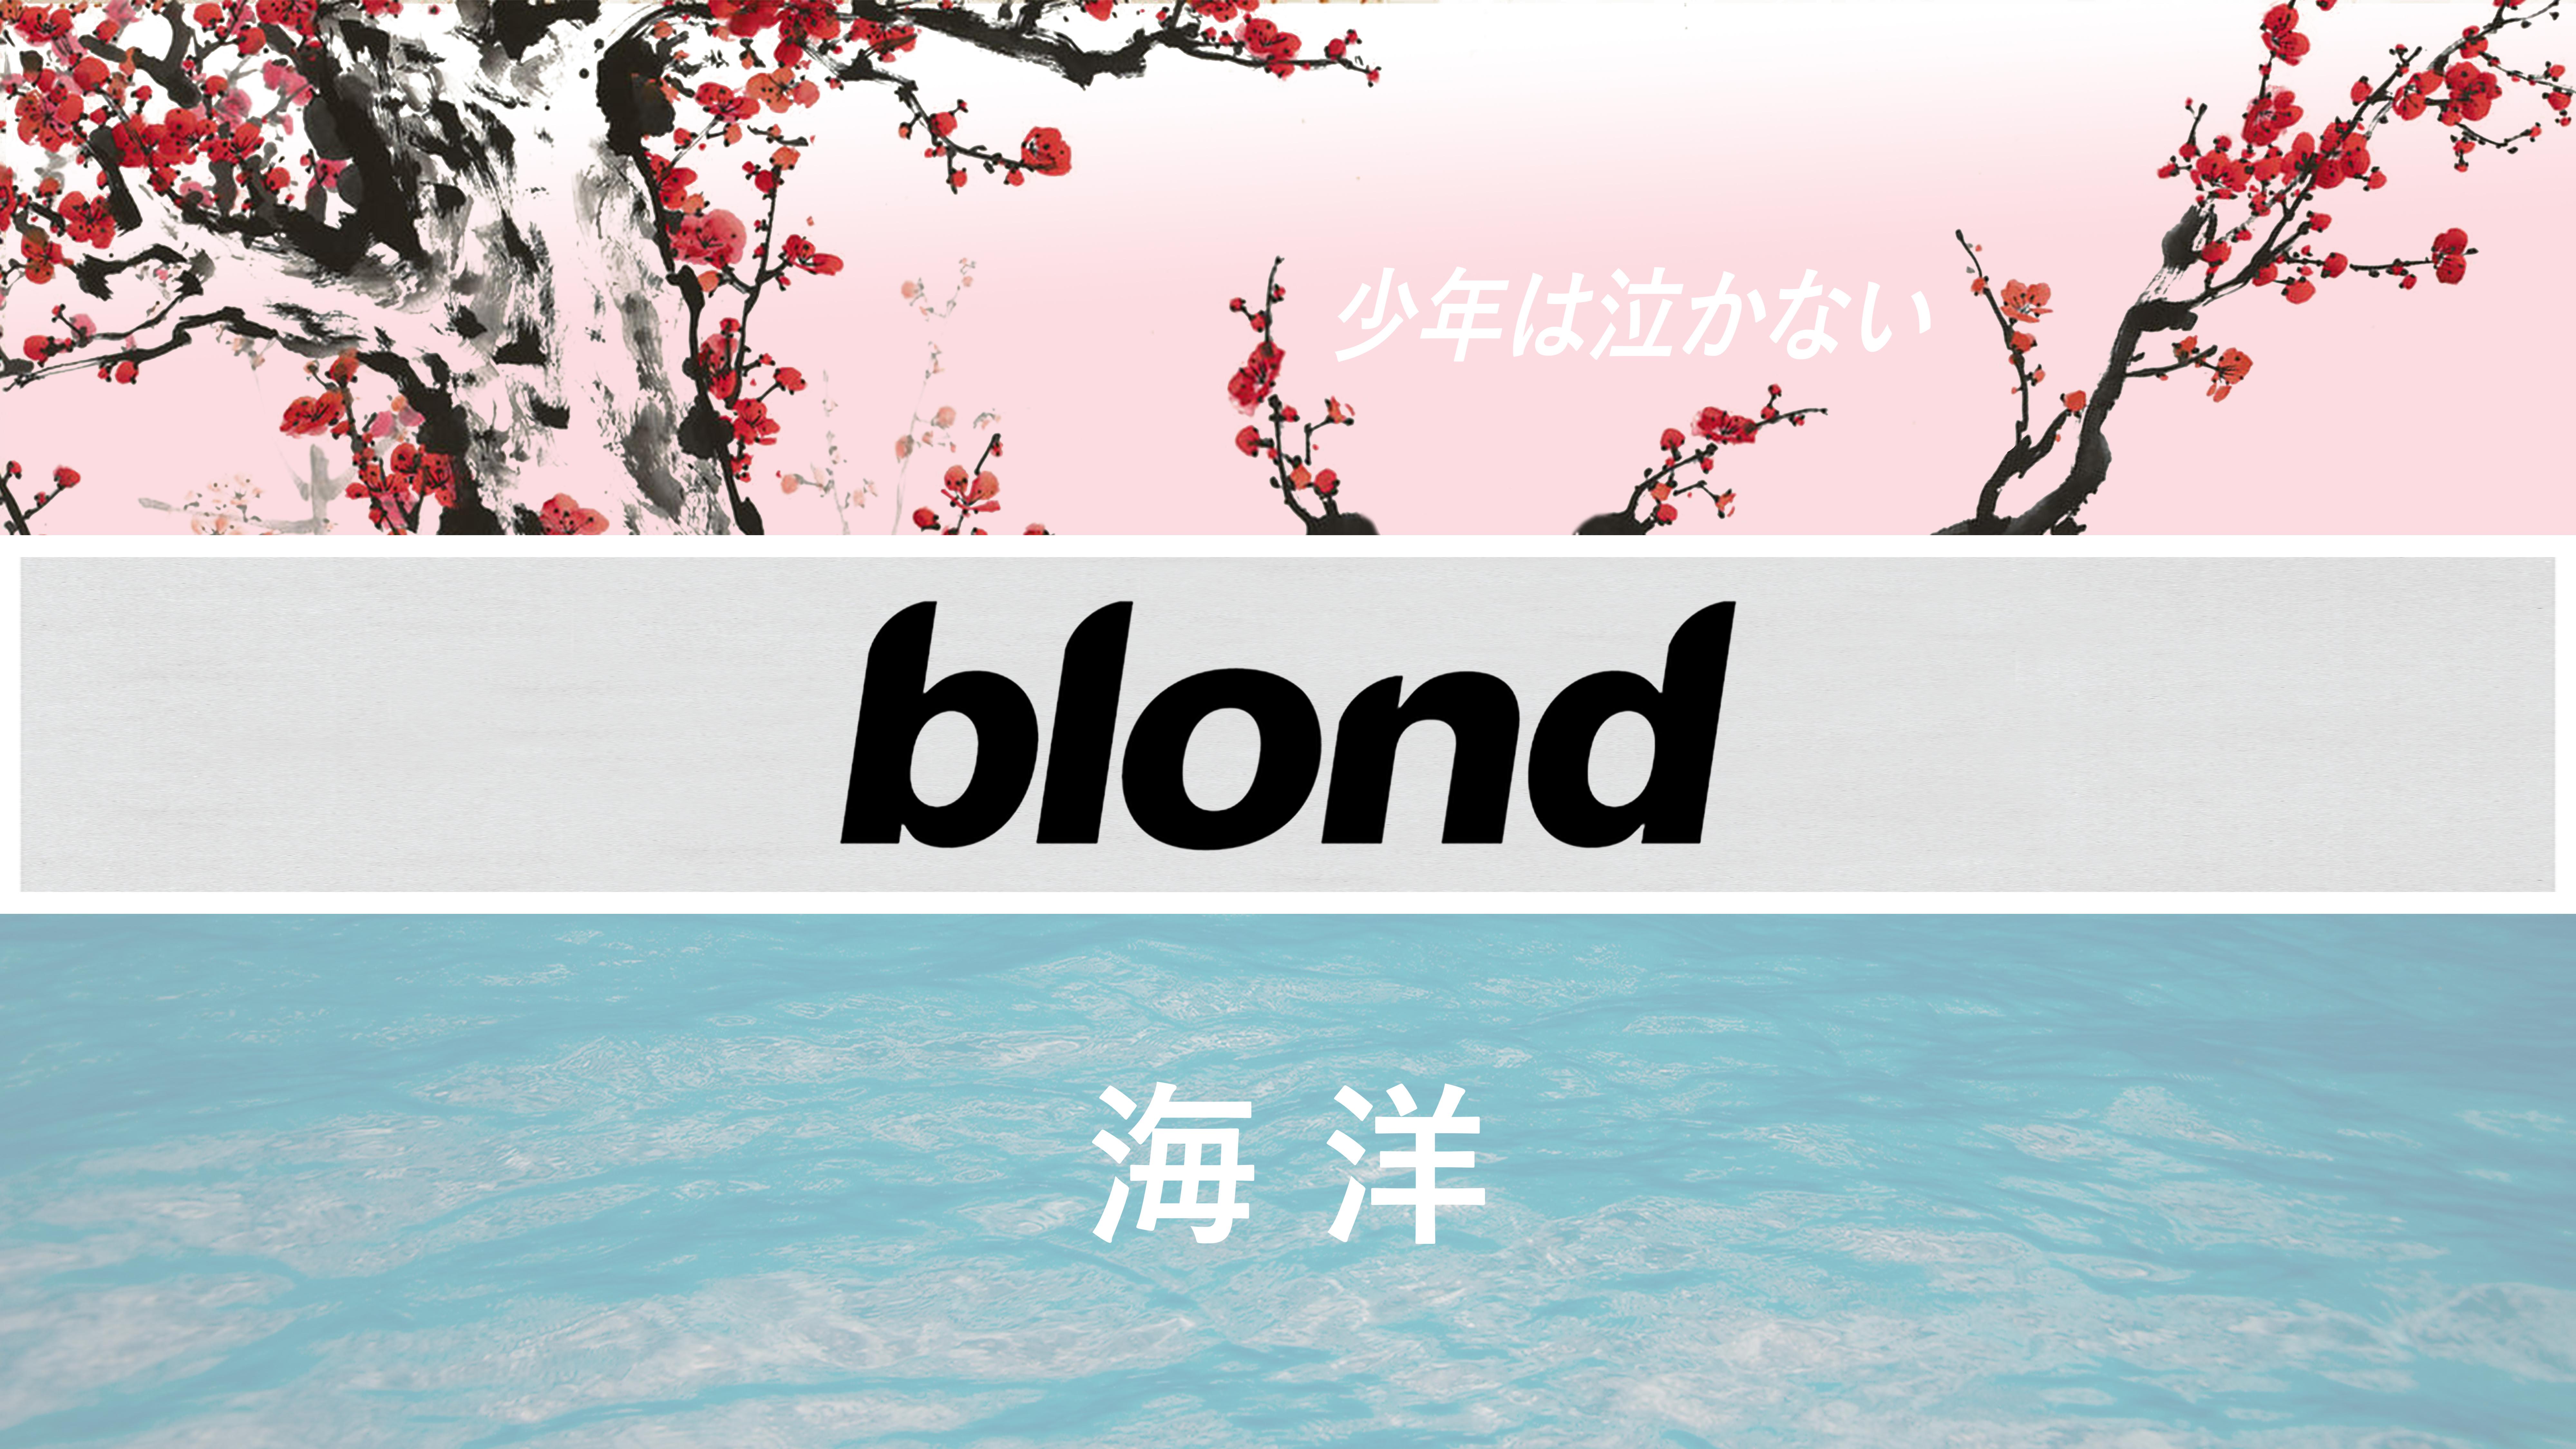 Fan Artmade - Cherry Blossom , HD Wallpaper & Backgrounds